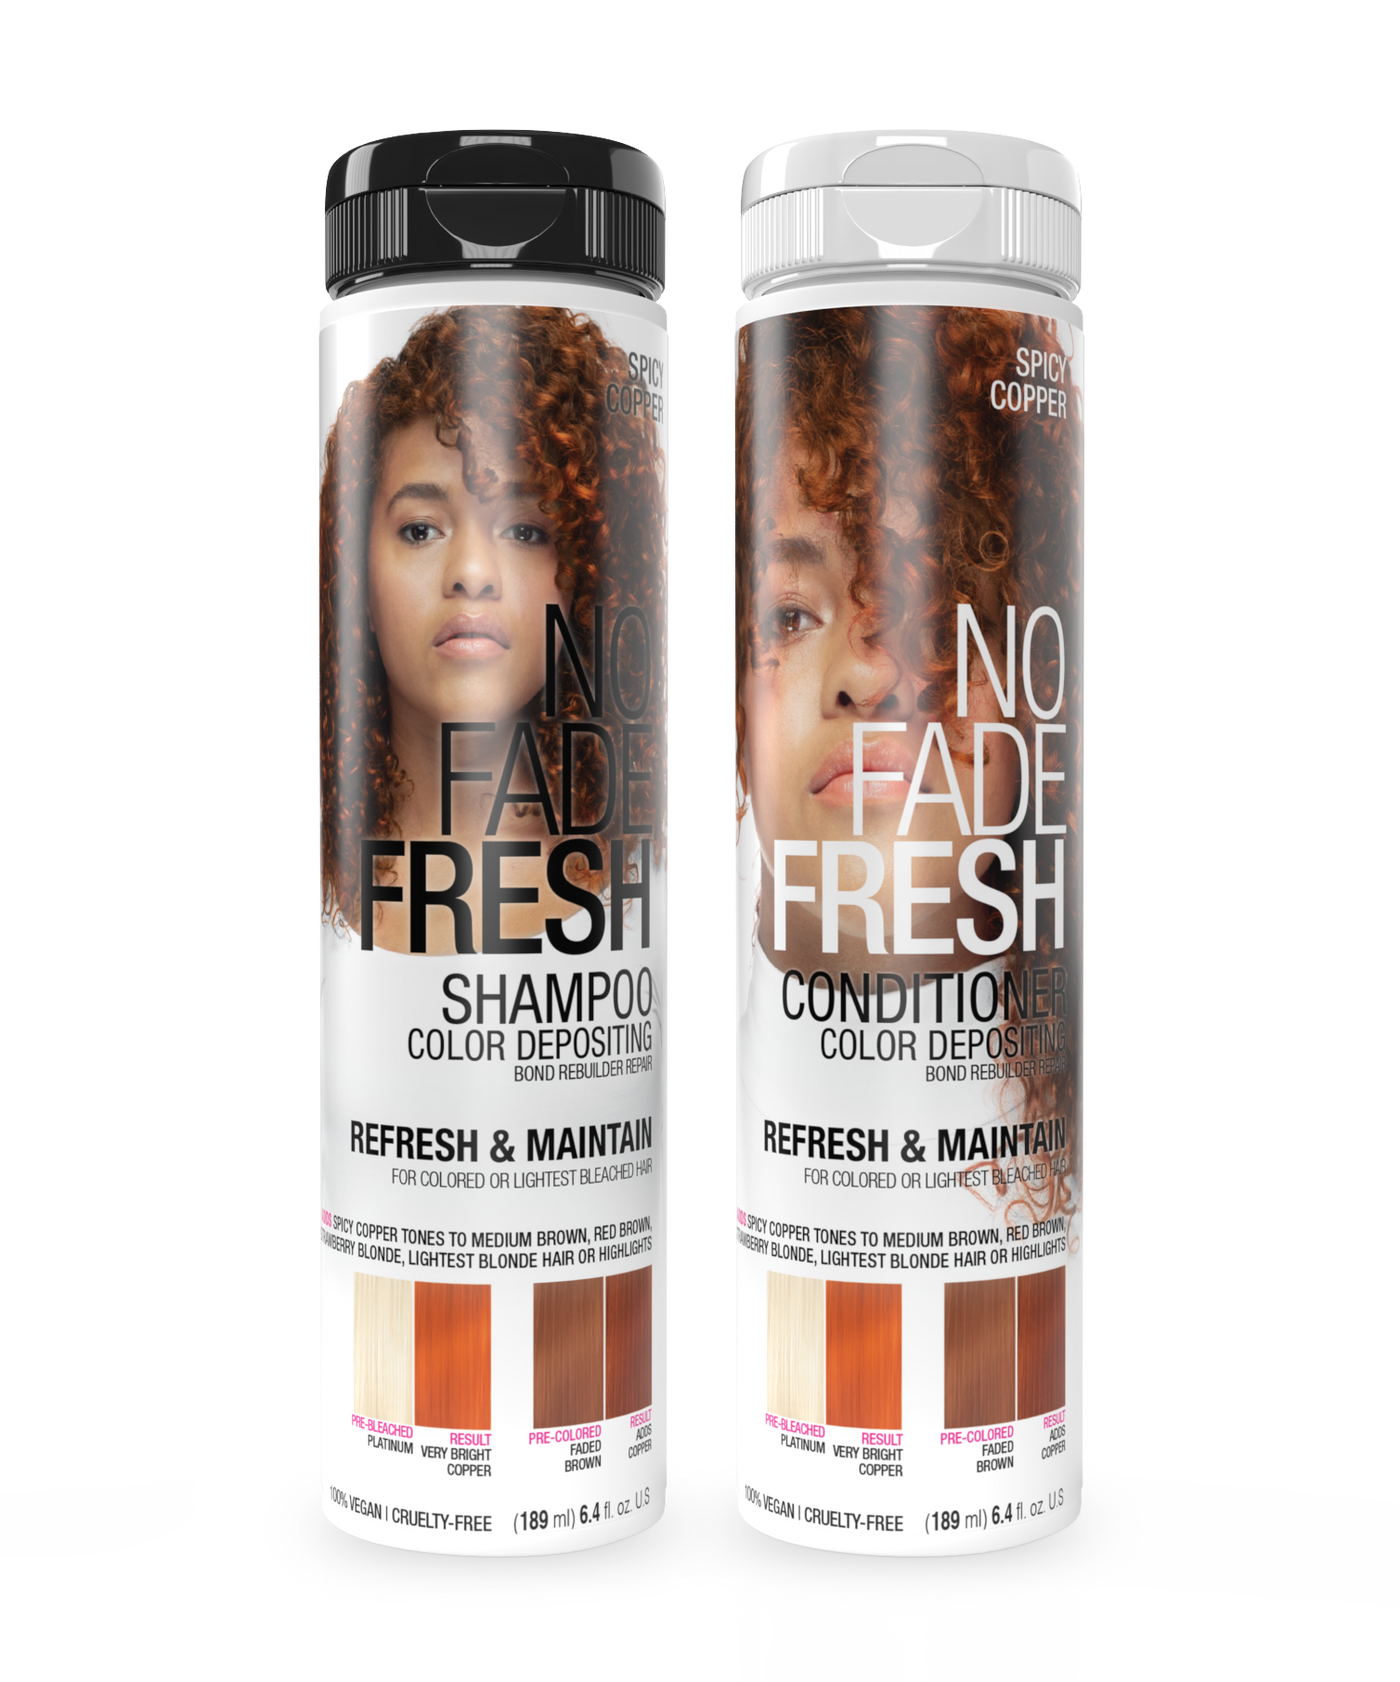 No Fade Fresh Semi Permanent Colour Depositing Shampoo & Conditioner Duo Spicy Copper 189ml